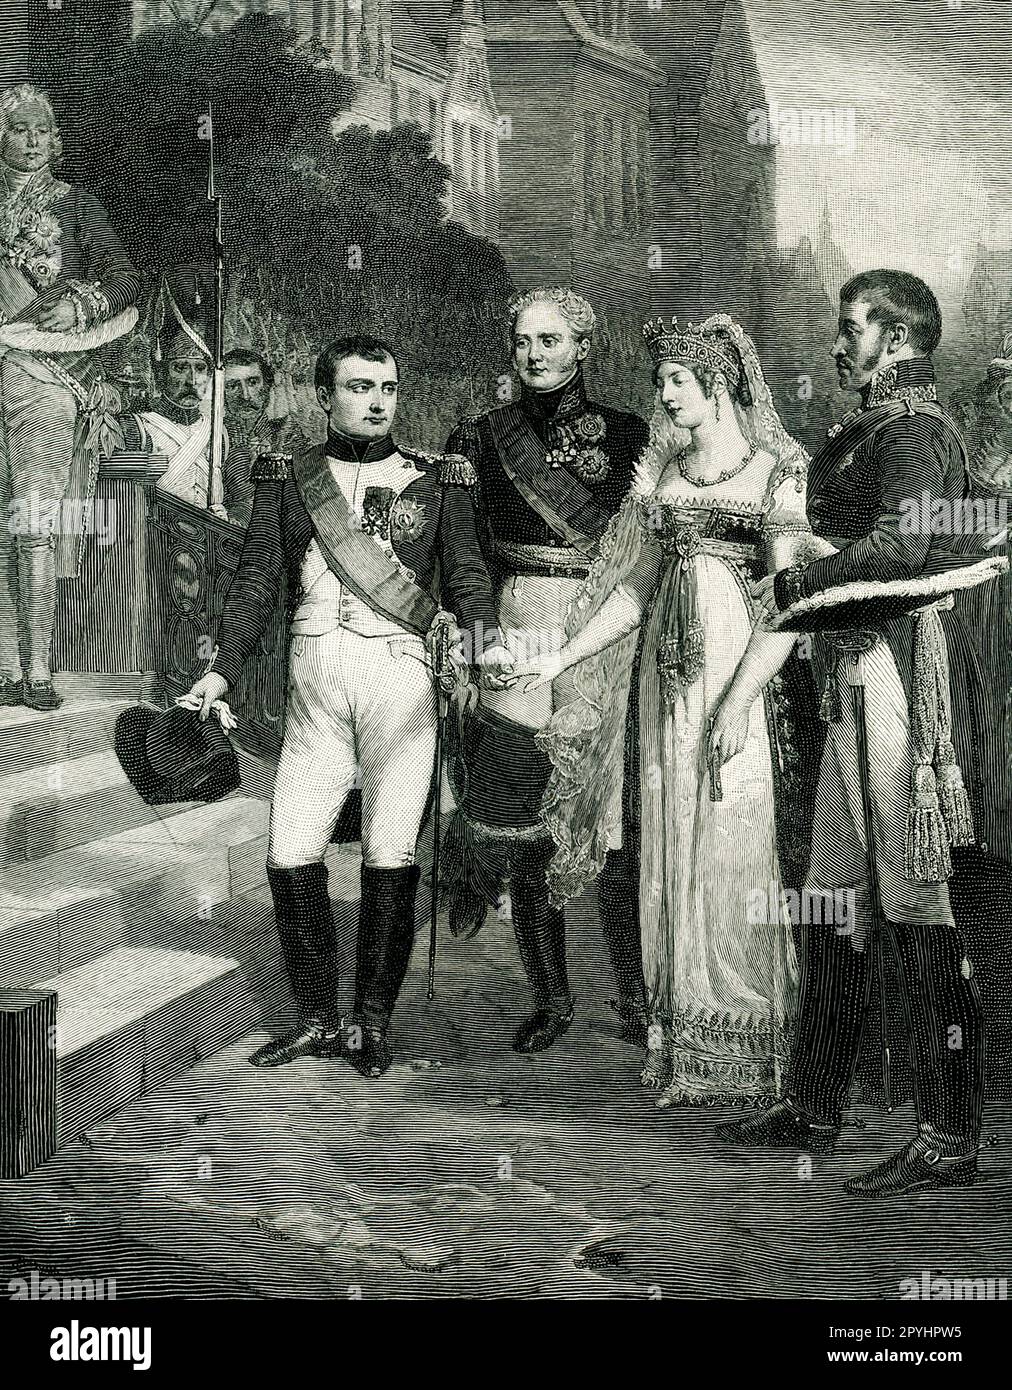 Questa immagine tratta da un numero del 1896 di Century Magazine mostra Napoleone che riceve la Regina di Prussia a Tilst il 6 luglio 1807. È da un dipinto di Nicolas-Louis-Francois Gosse che si trova nel museo di Versailles che è stato inciso da Peter Aitken. Foto Stock